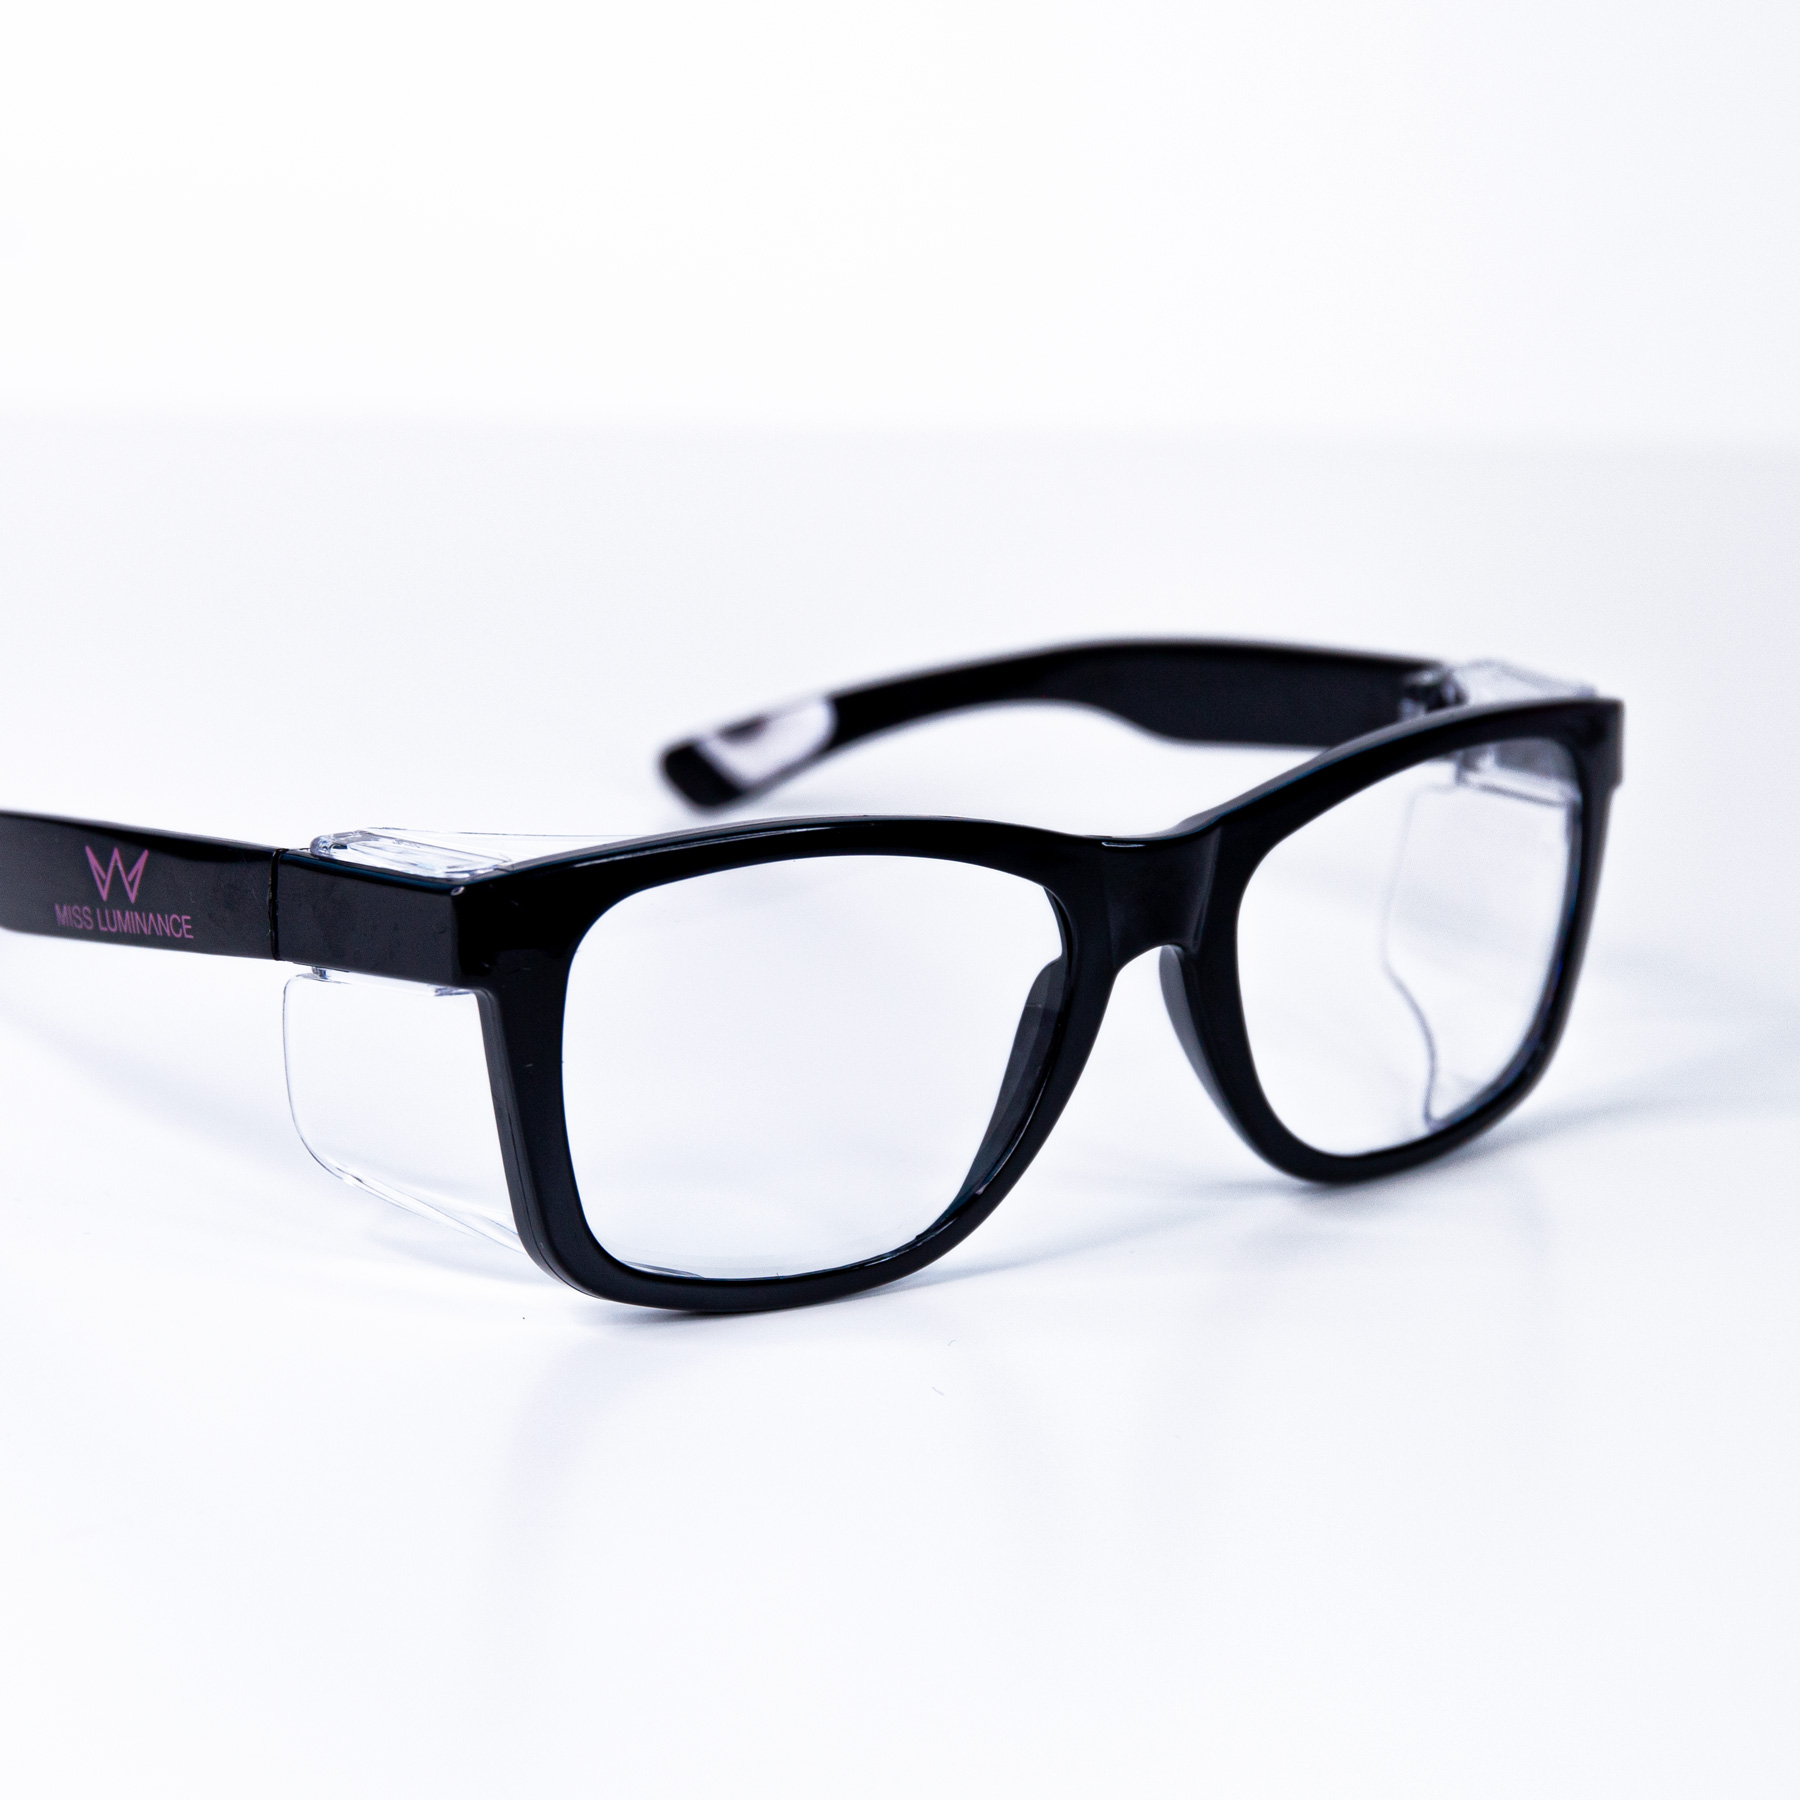 UV-Safety glasses